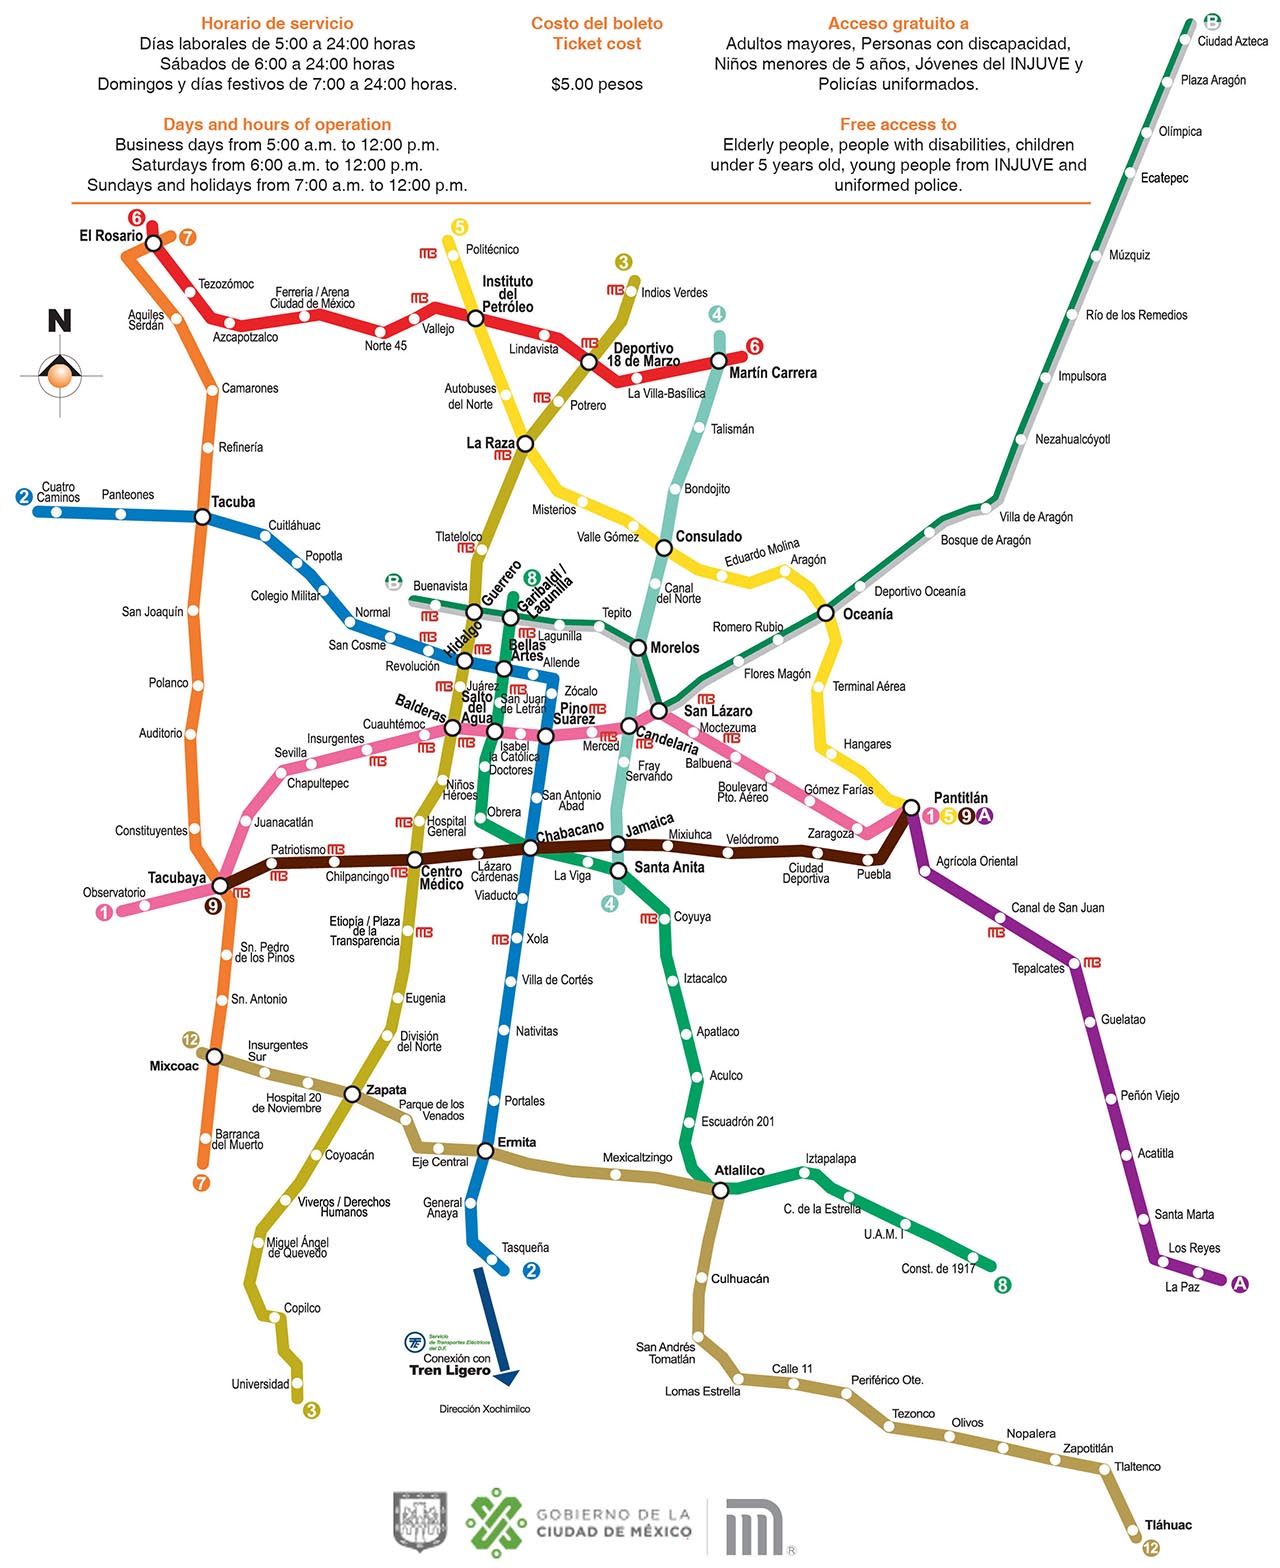 Mapa do metrô da cidade do México